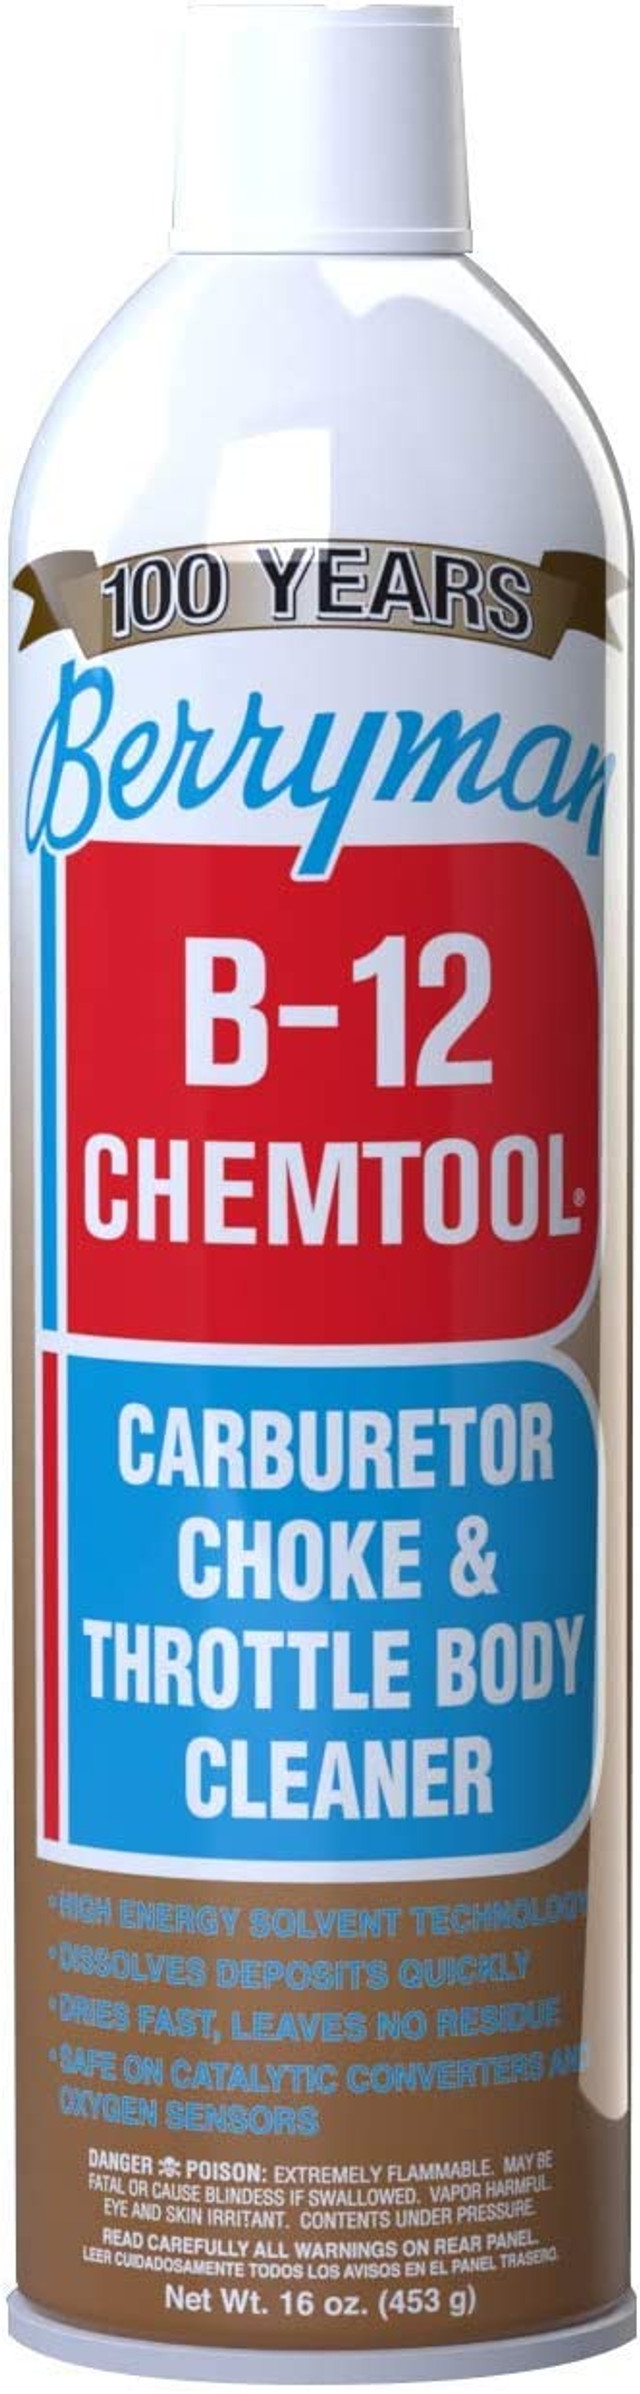 BERRYMAN b-12 chemtool förgasarrengörare (0117)